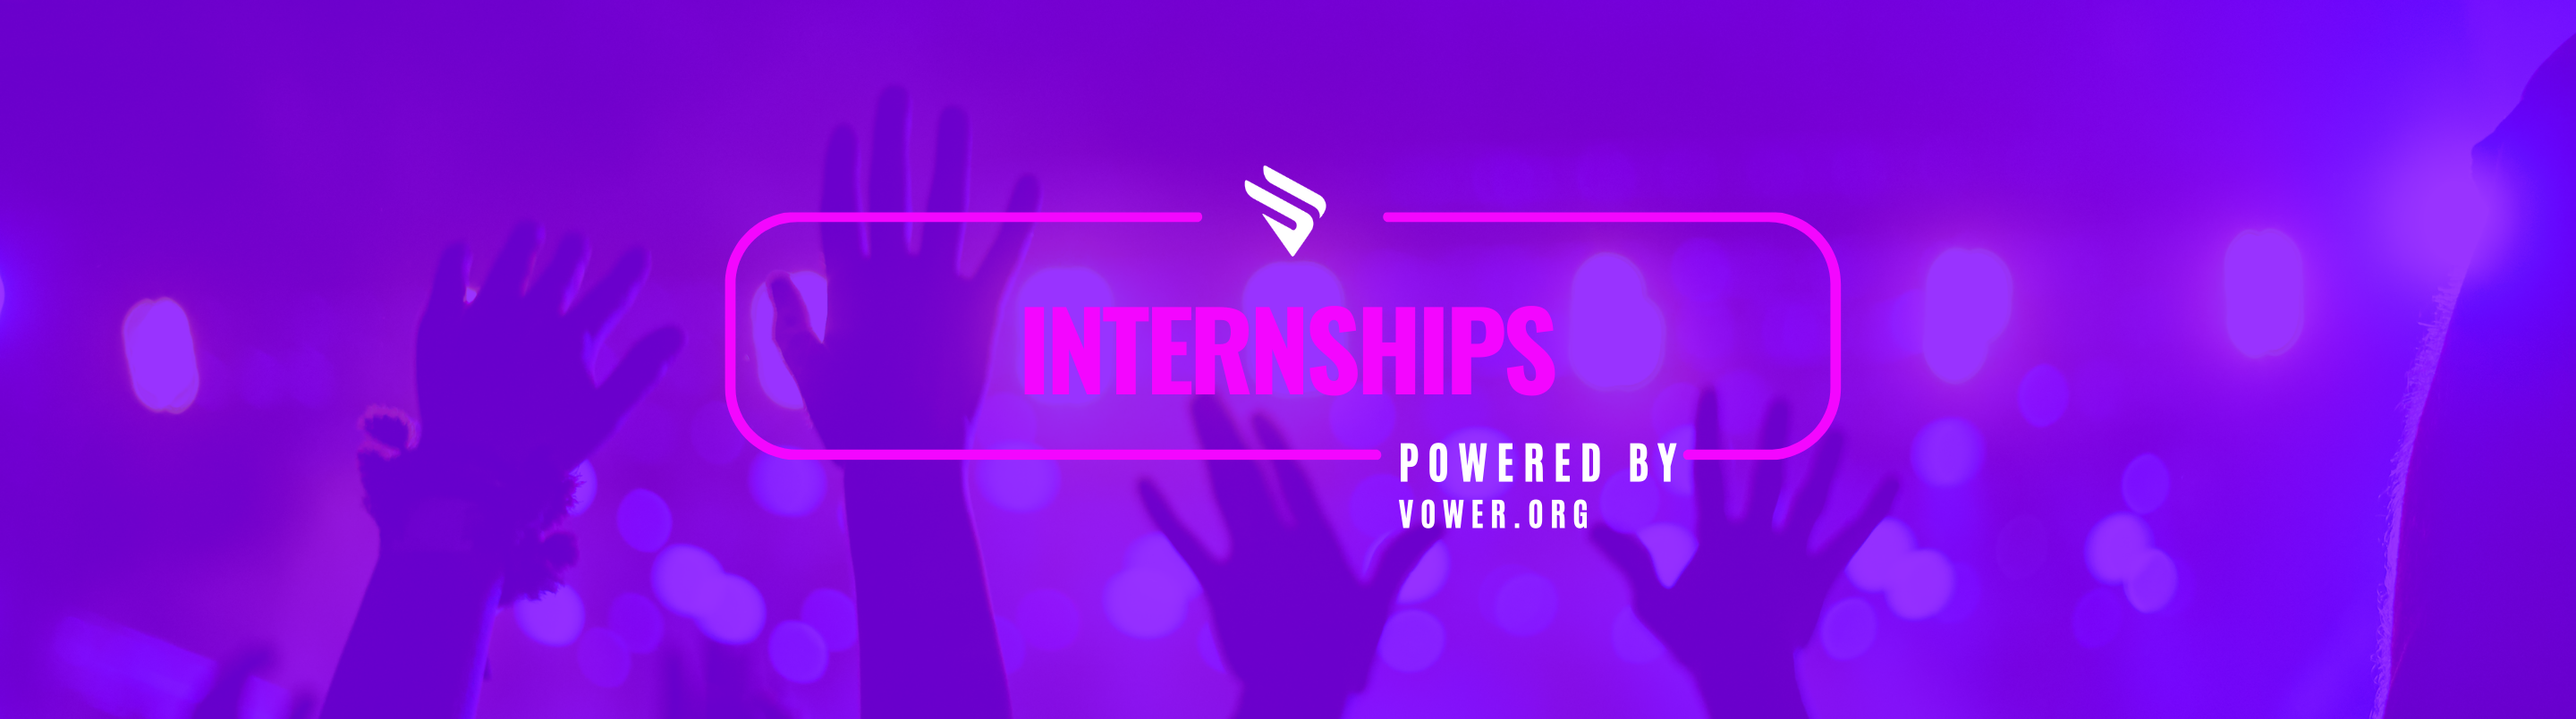 StageWing™ internship header